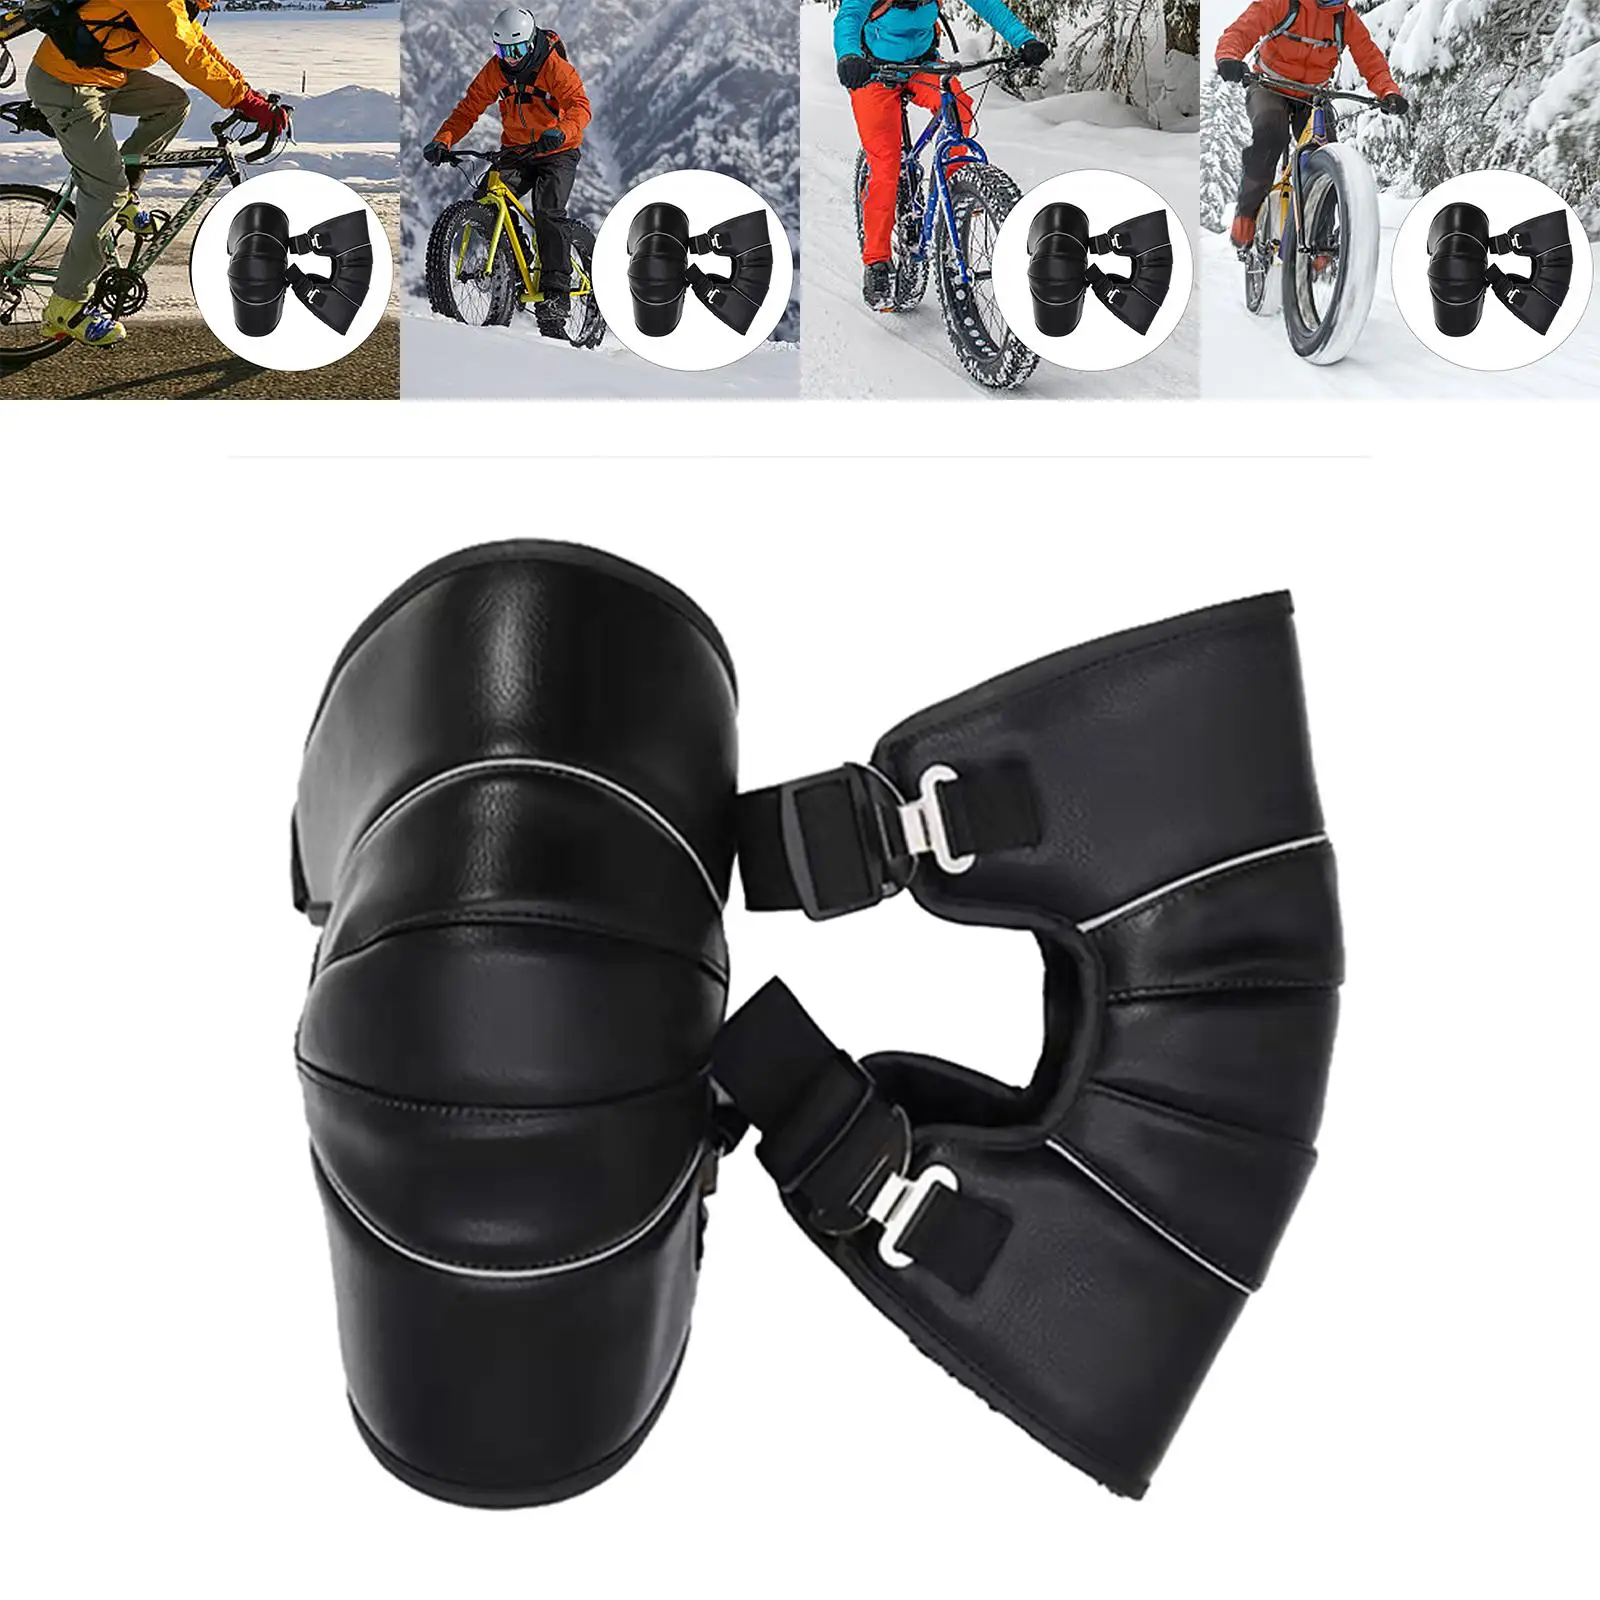 2Pcs Winter Knee Pads Leggings Motorcycles Waterproof Leg Sleeve Protective Gear